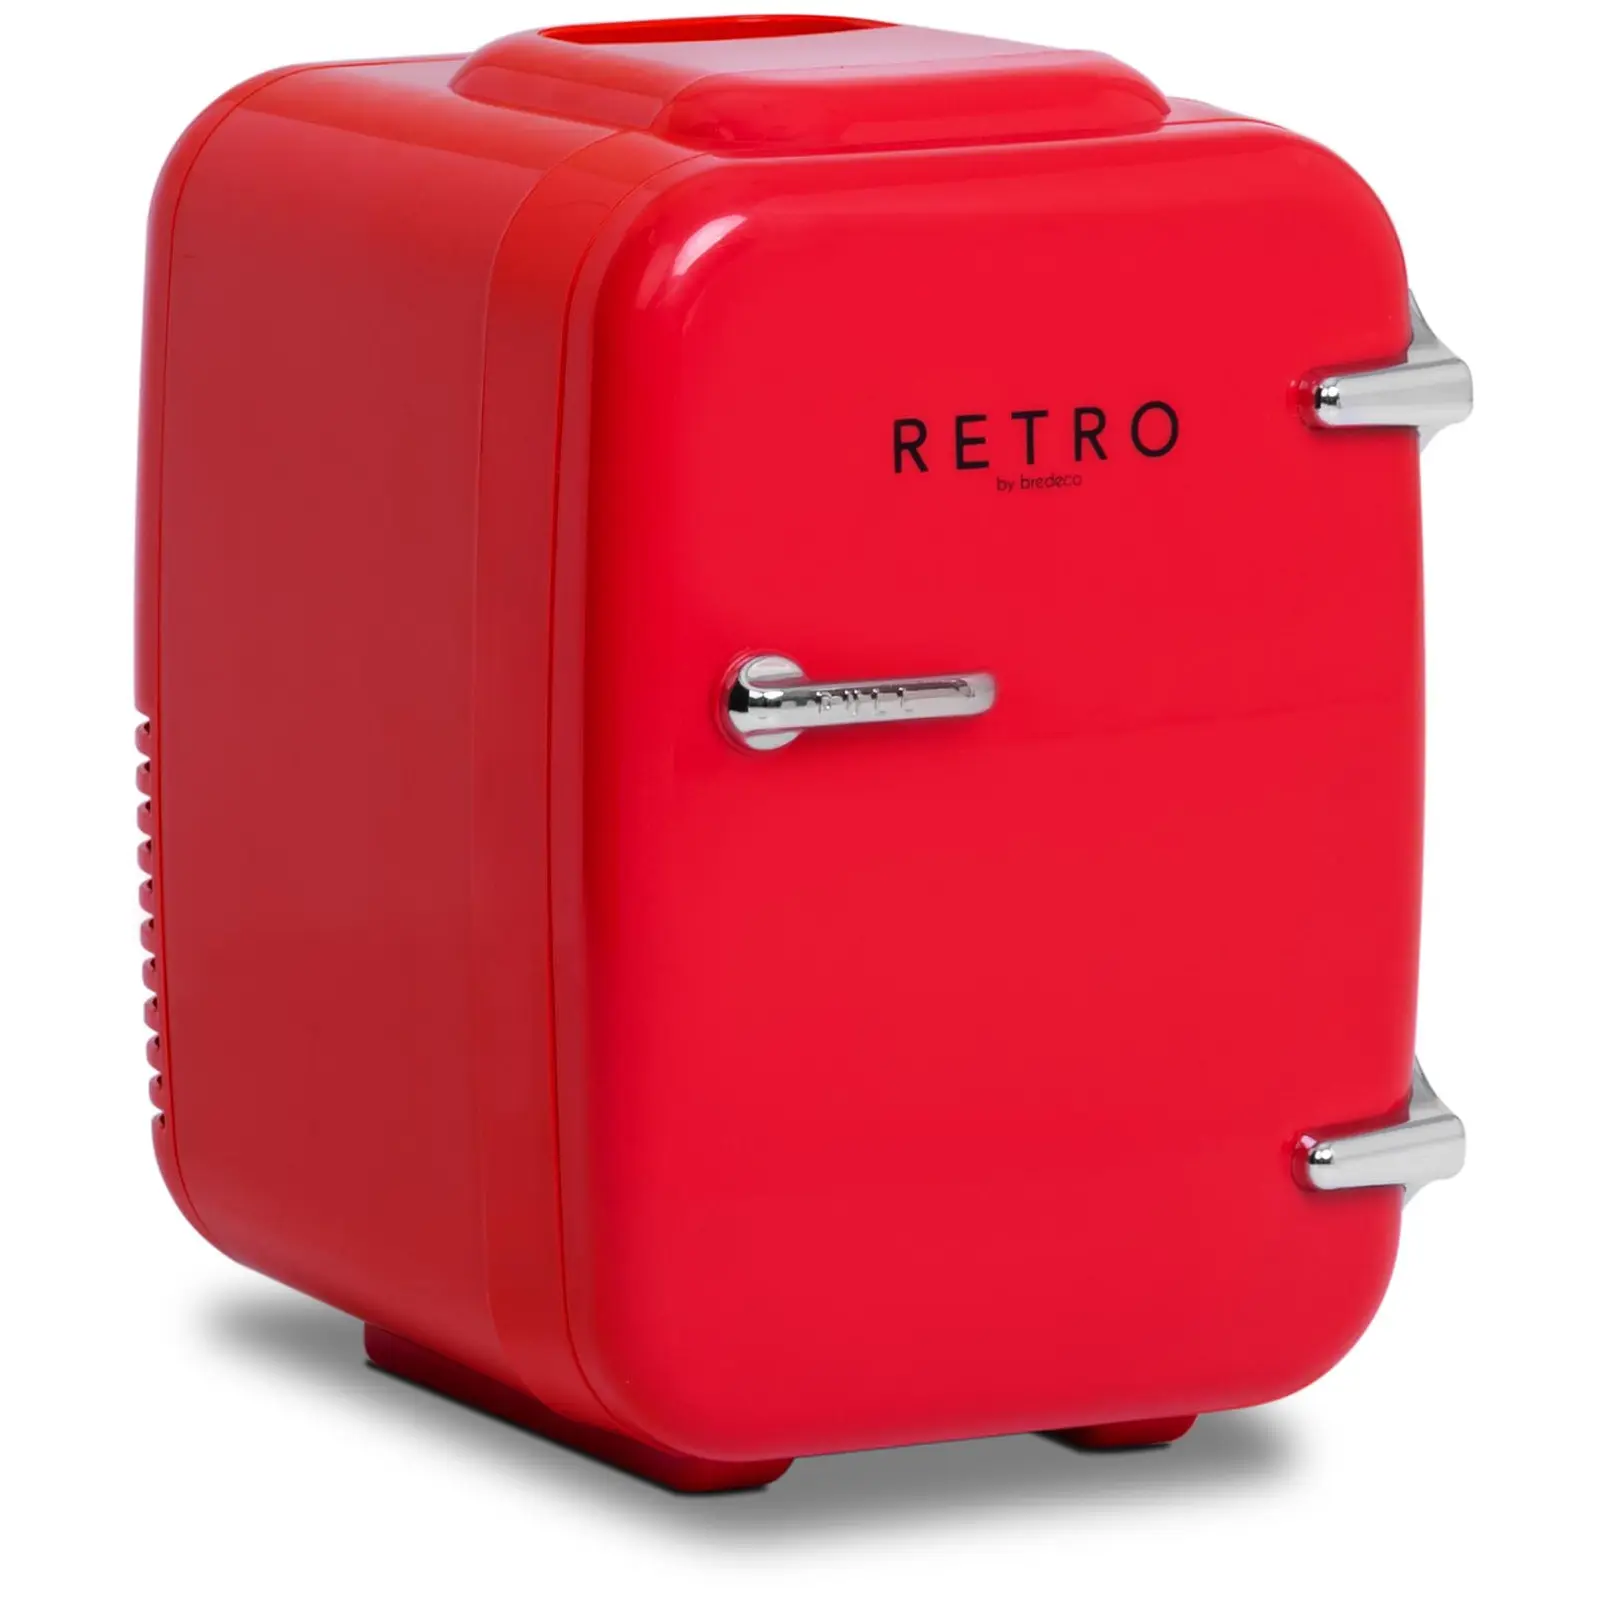 Mini refrigerador - 4 L - rojo